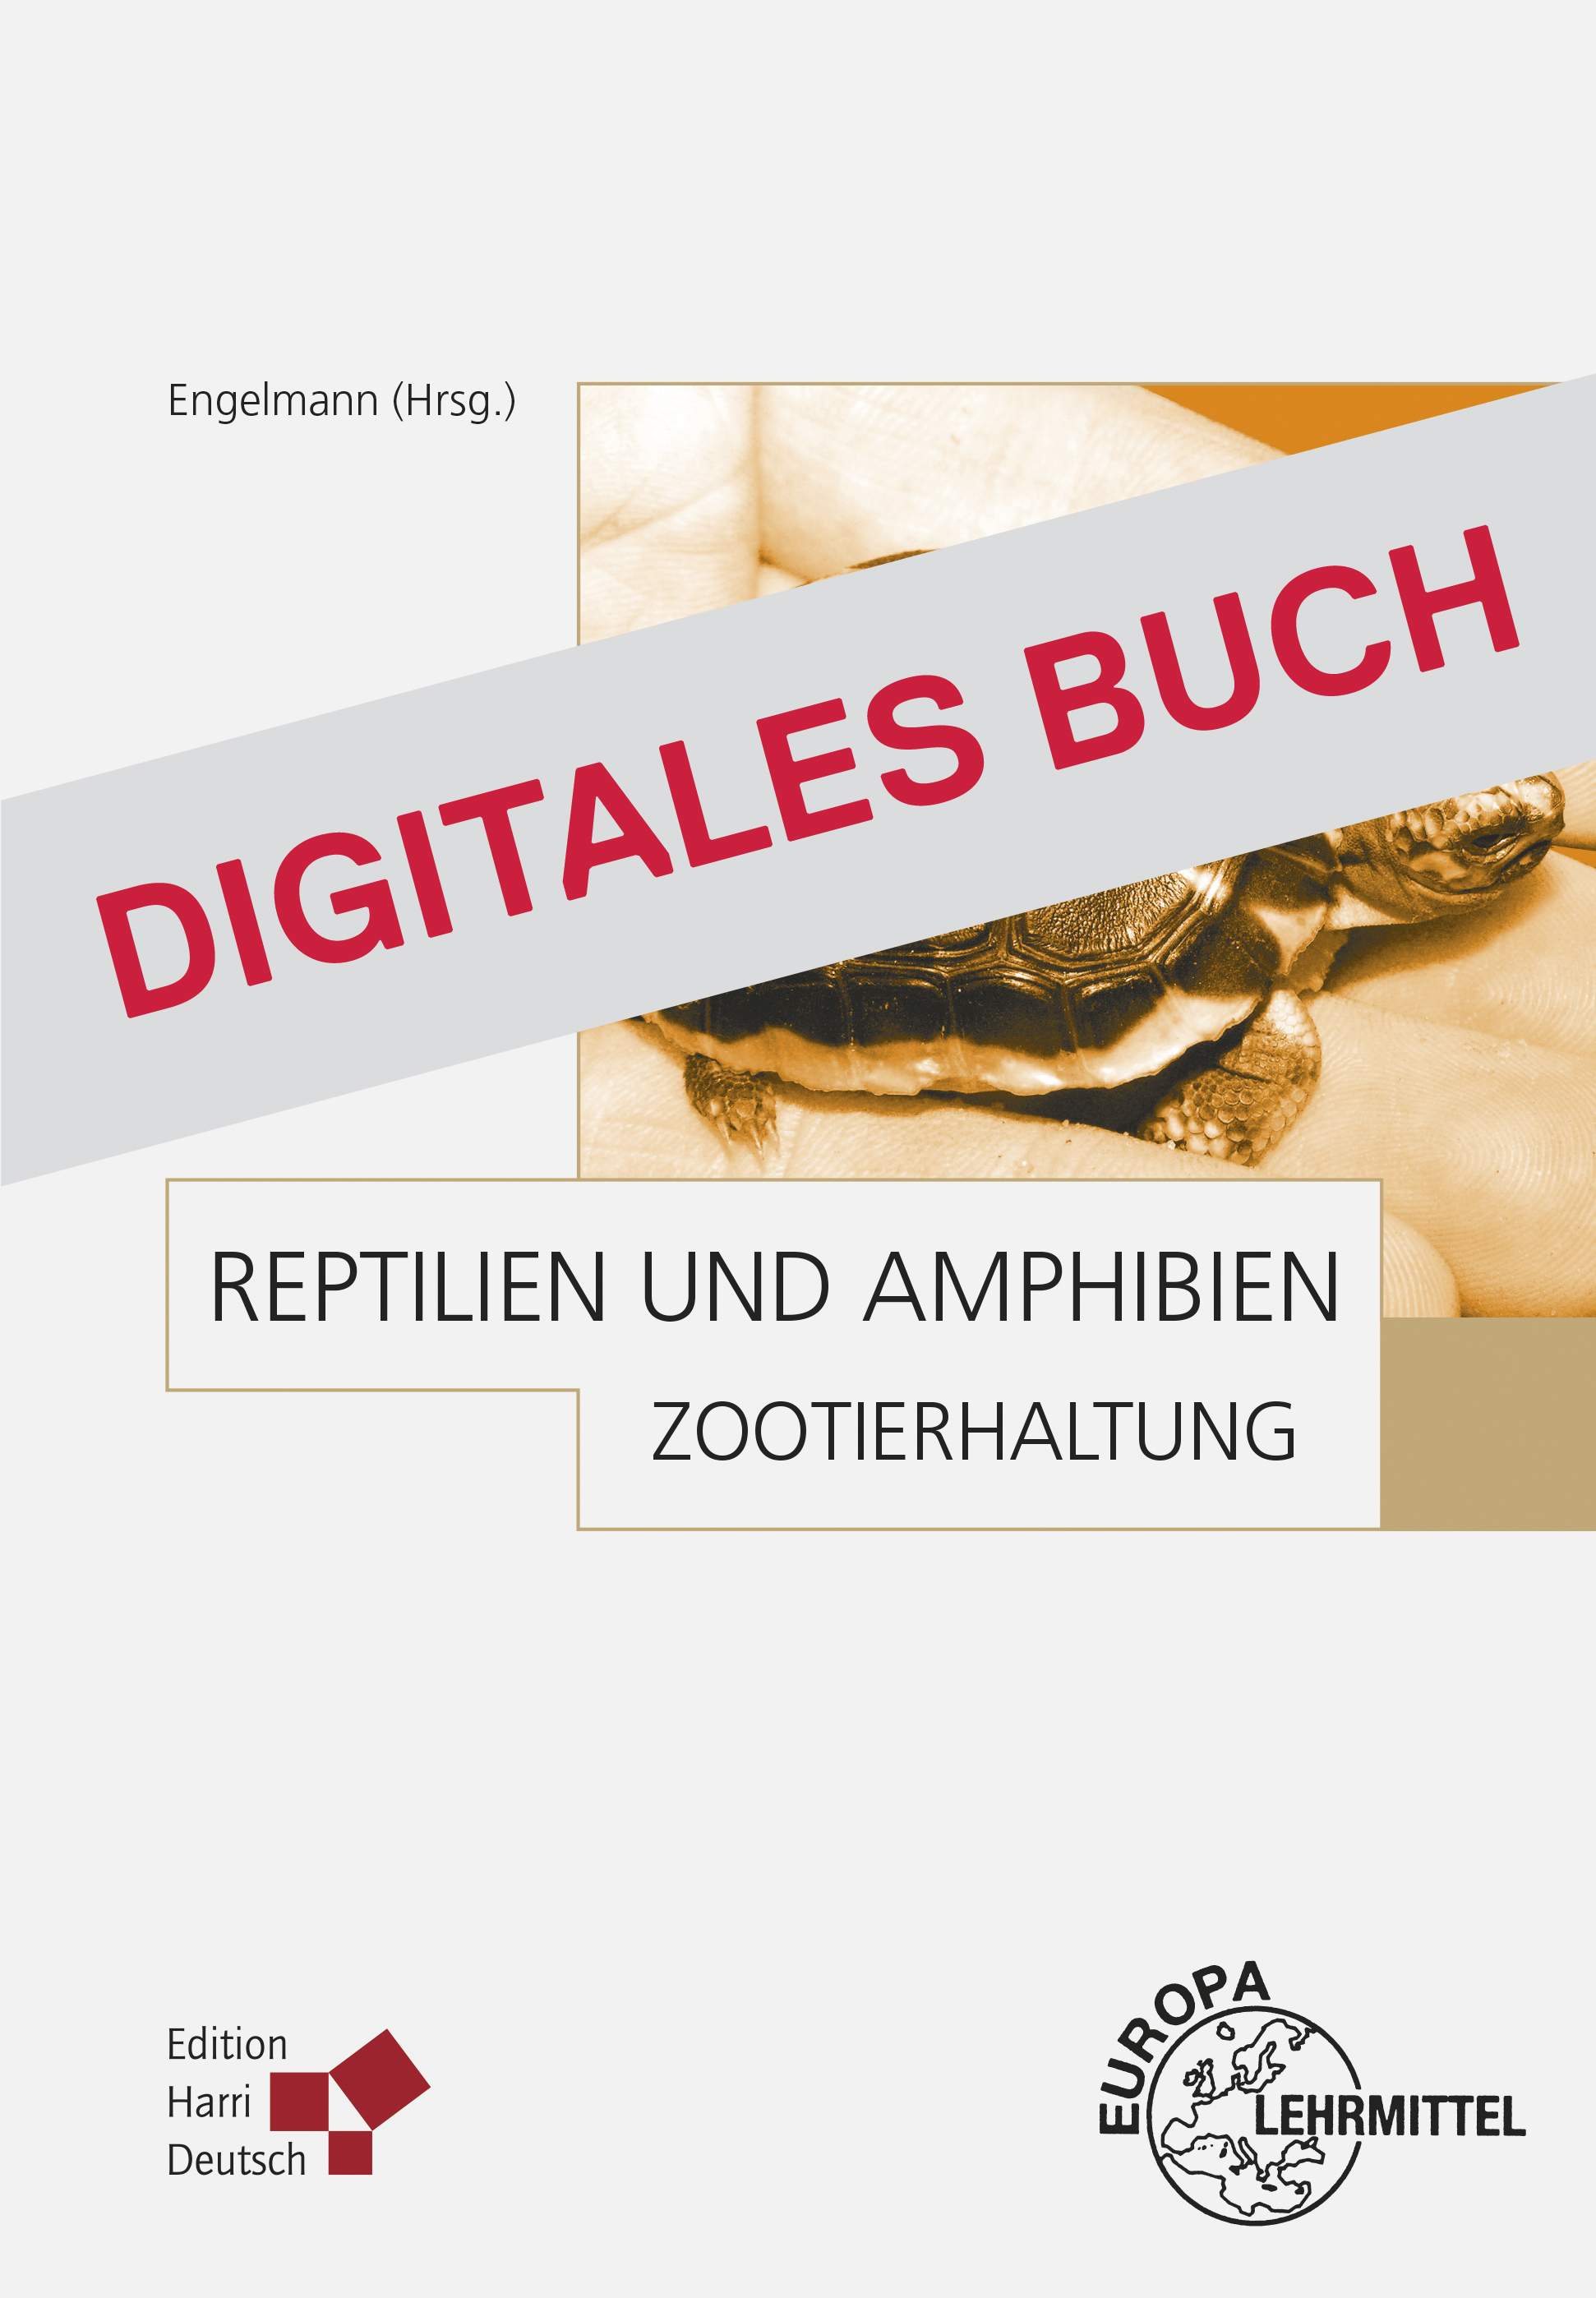 Zootierhaltung: Reptilien und Amphibien - Digitales Buch